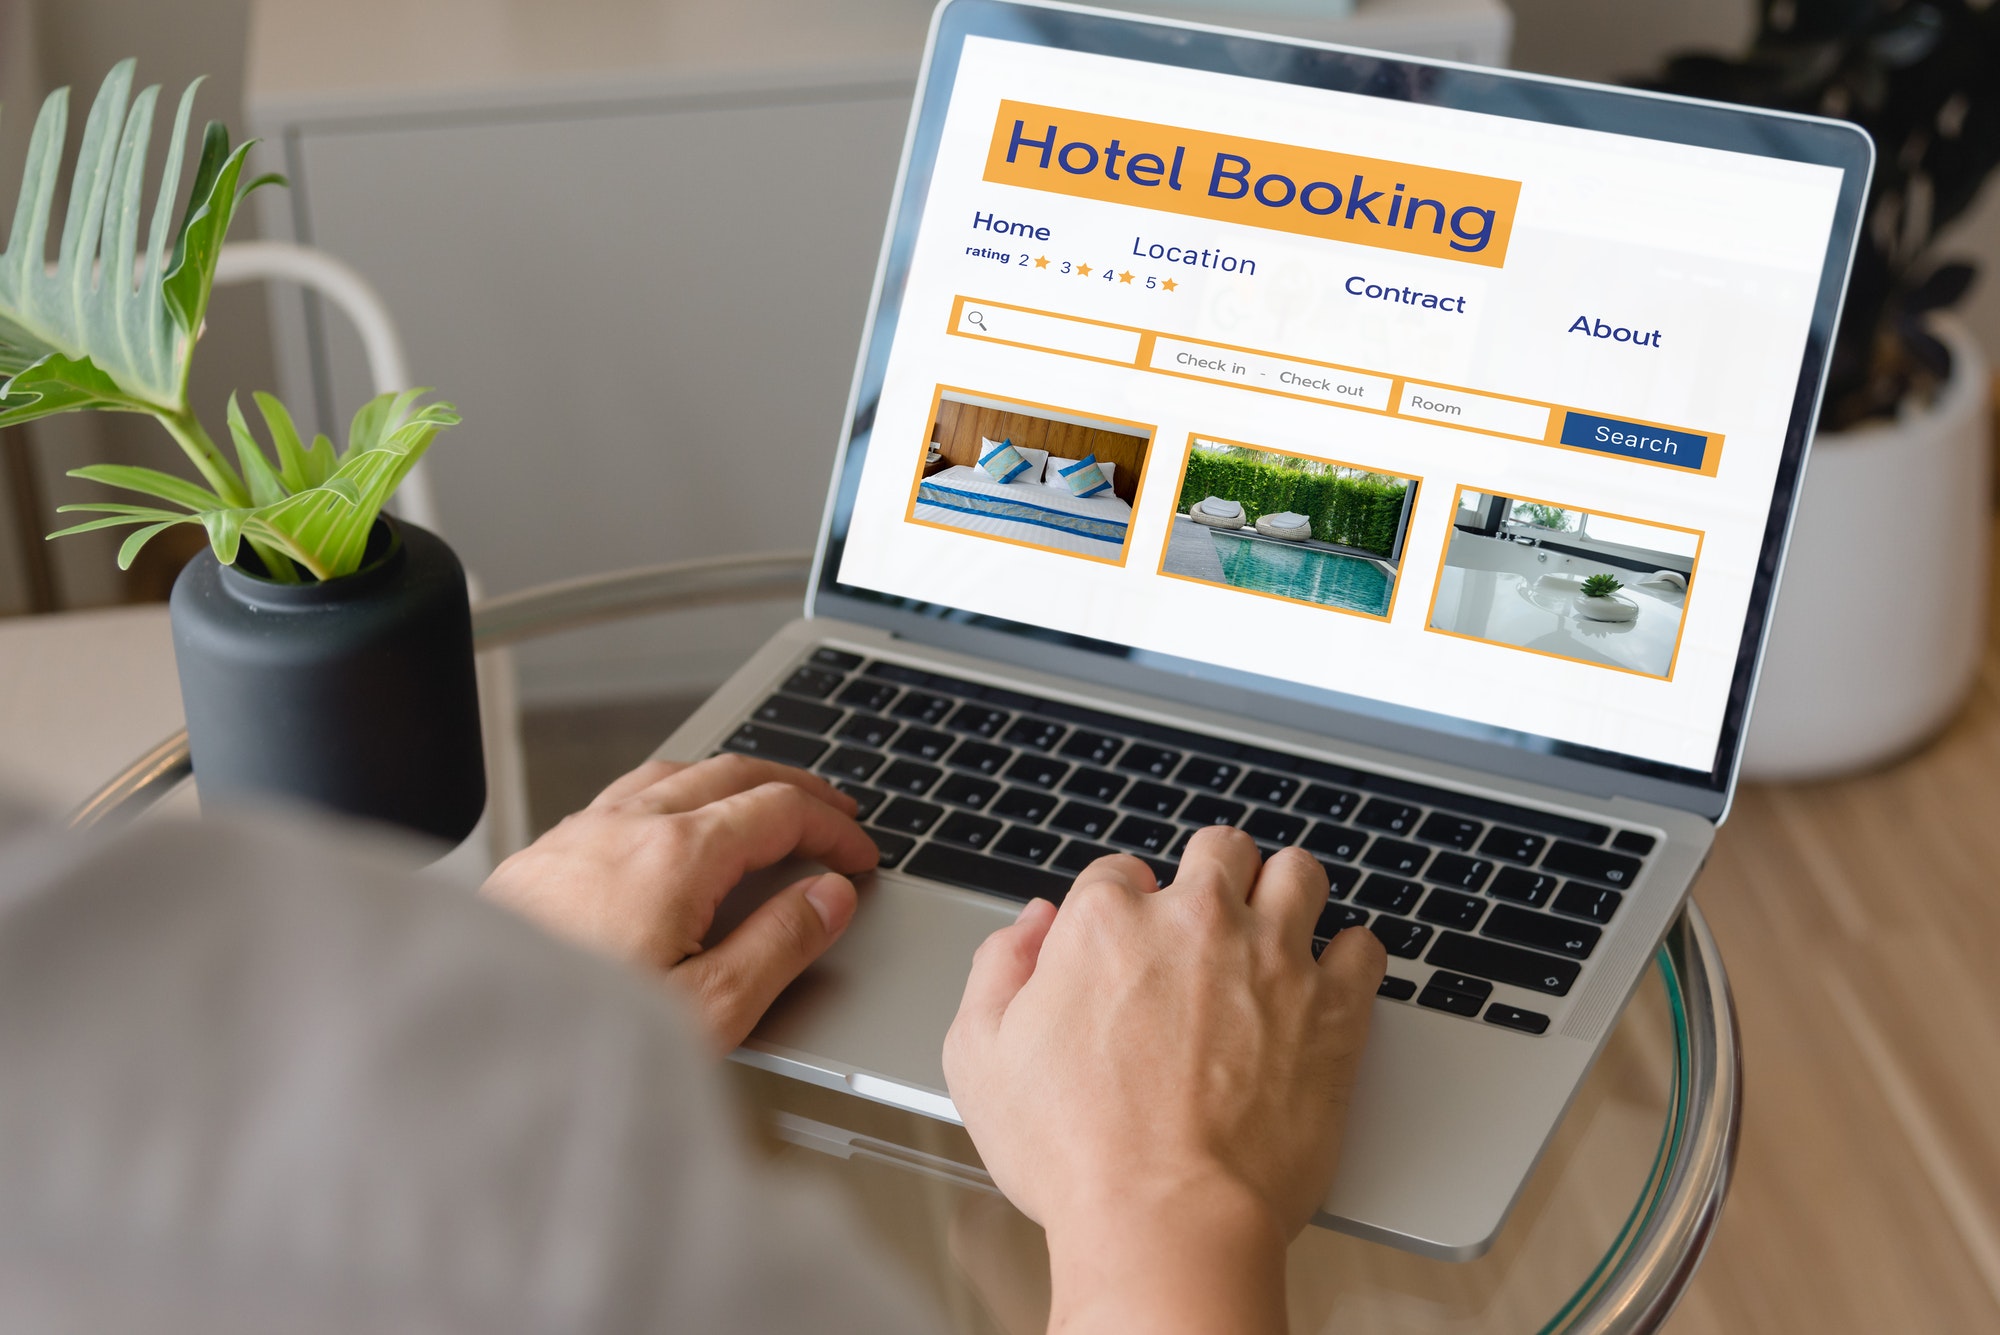 Hôtel victime de piratage informatique : Le Provençal en colère contre Booking.com